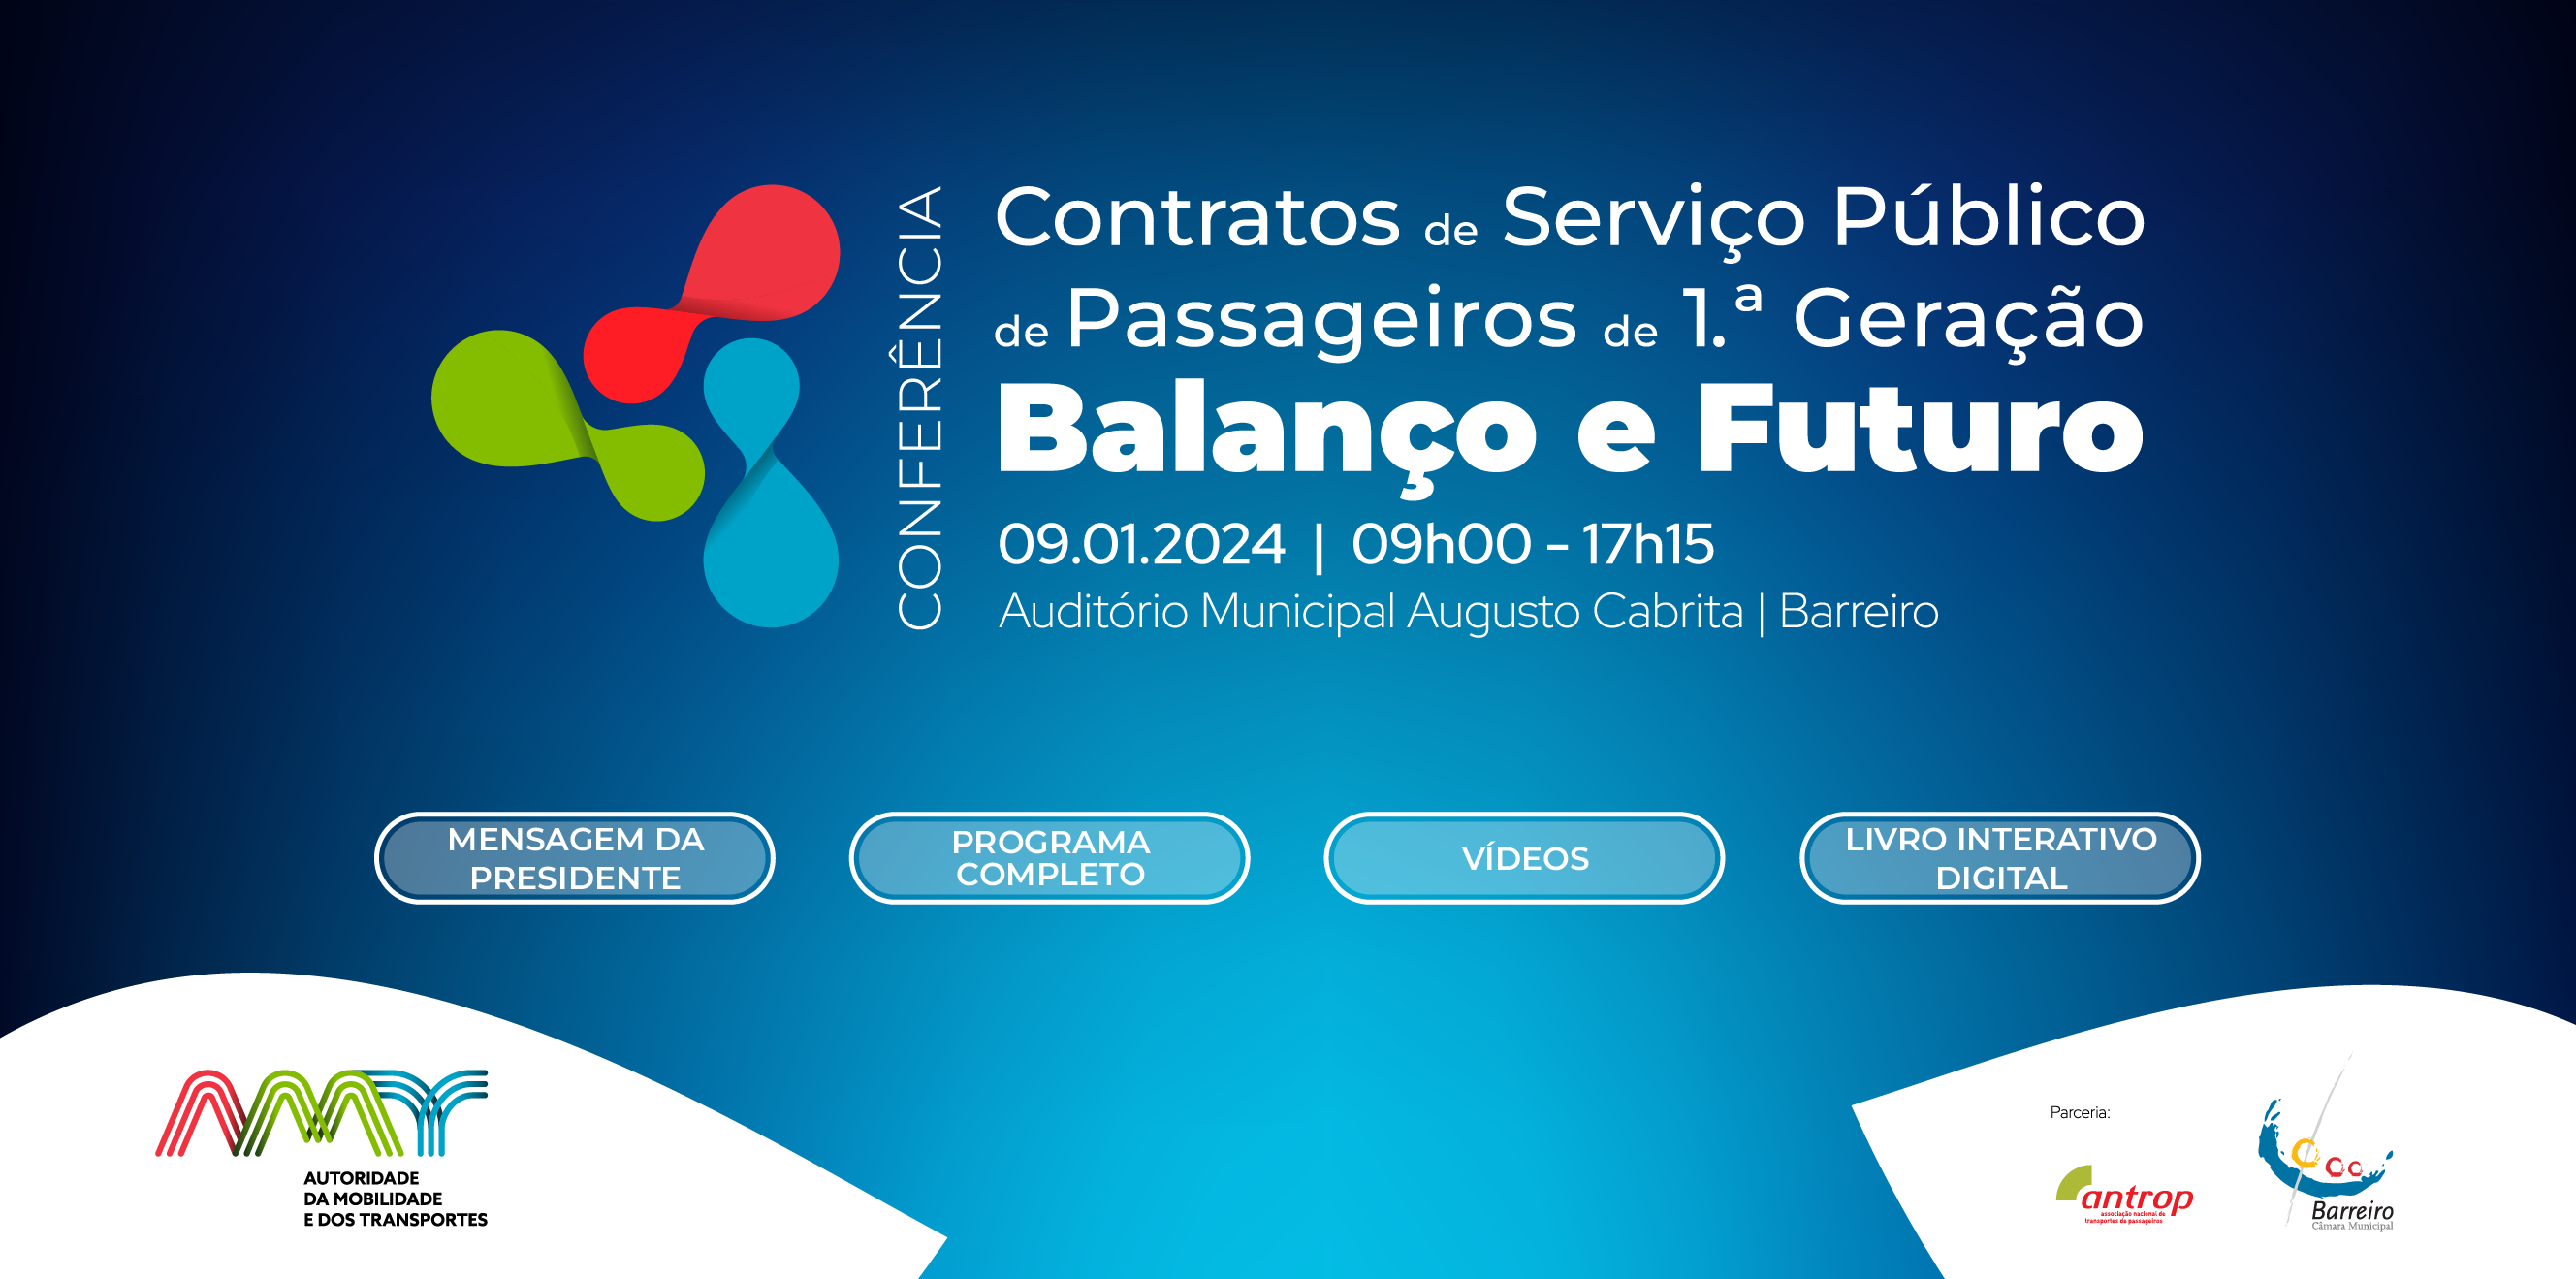 Conferência - Contratos de Serviço Público de Passageiros de 1ª Geração - Balanço e Futuro